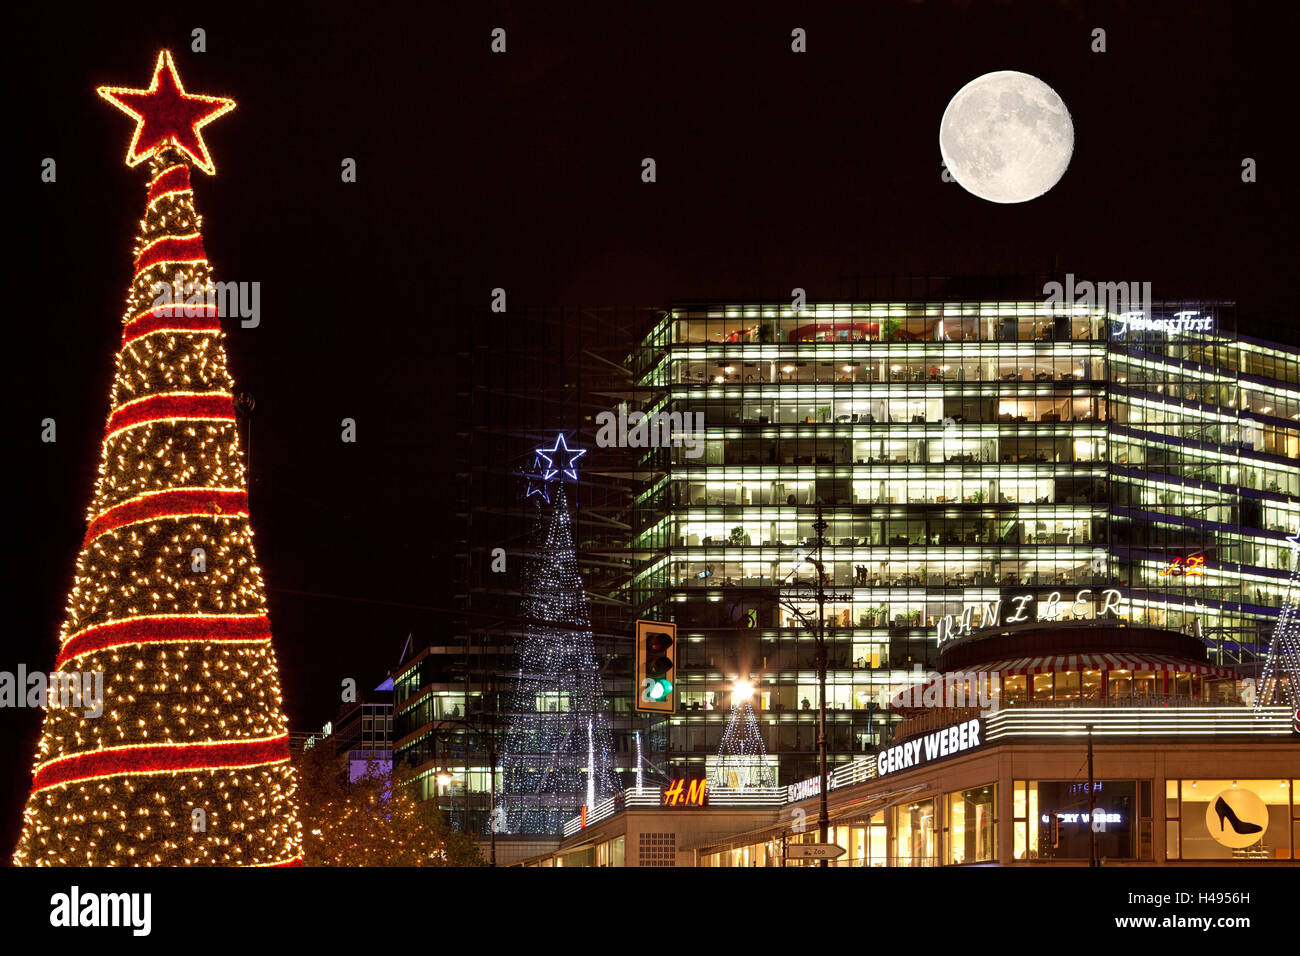 Germania, Berlino, Kudamm, Neues Kranzlereck, notte, illuminazione decorazione di Natale, luna piena, Foto Stock